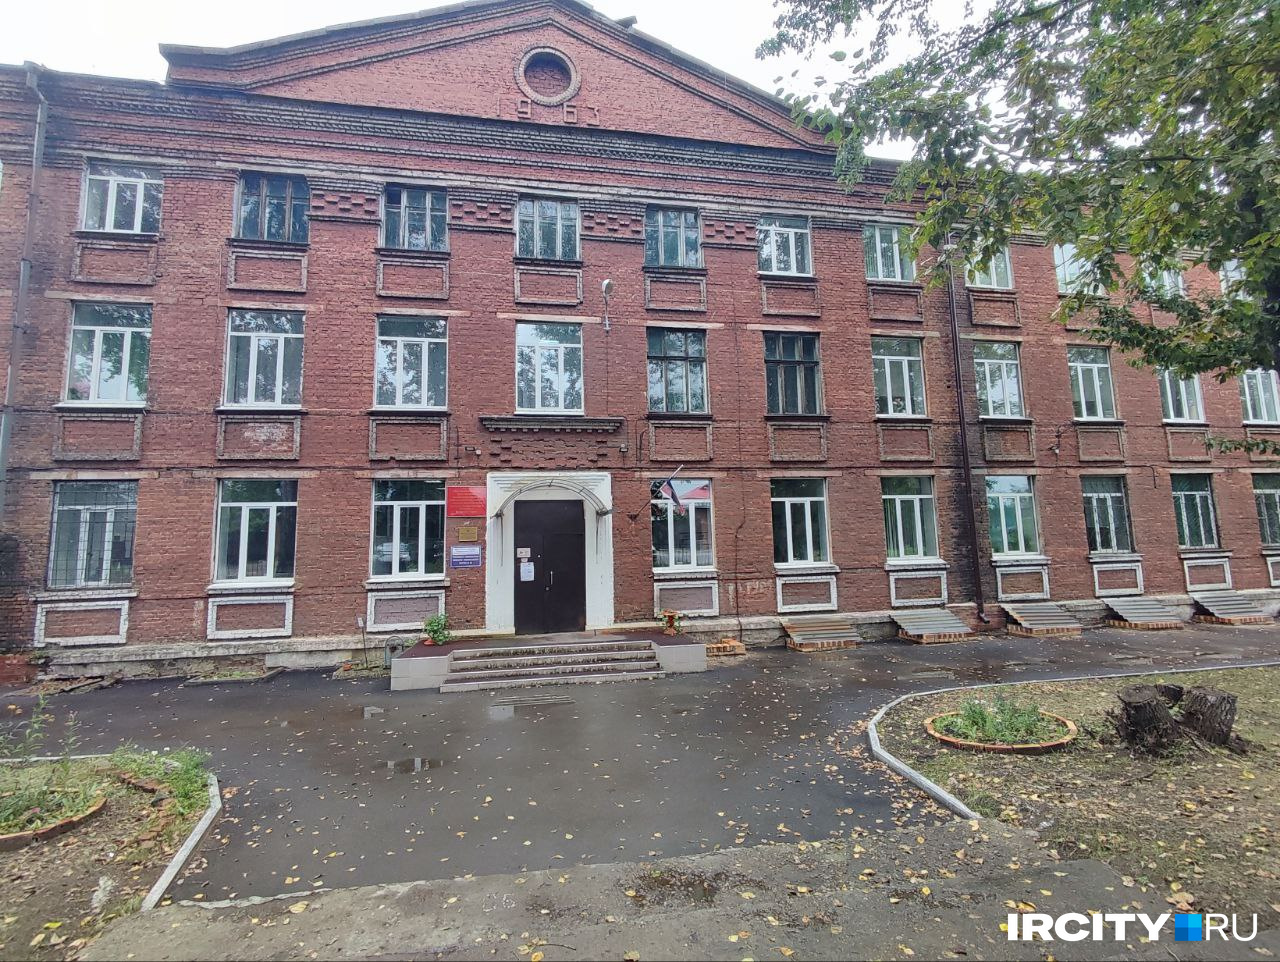 Избирательный участок в здании Иркутского техникума транспорта и строительства в Ново-Ленино